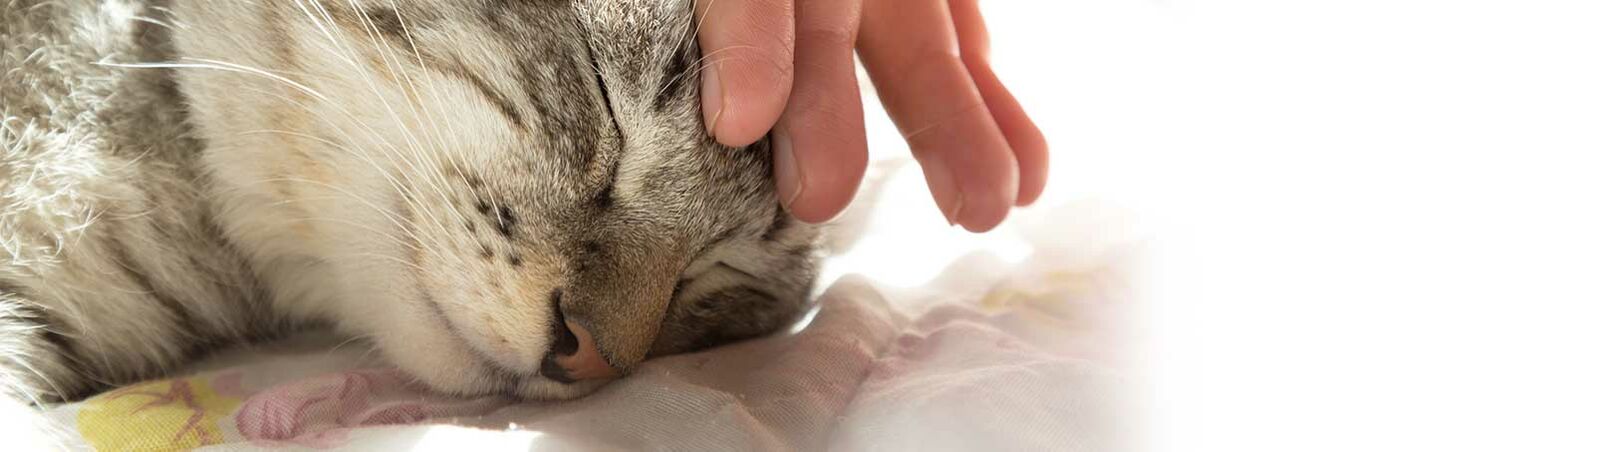 Eine Hand berührt den Kopf einer Katze, die entspannt liegt und die Augen geschlossen hat.